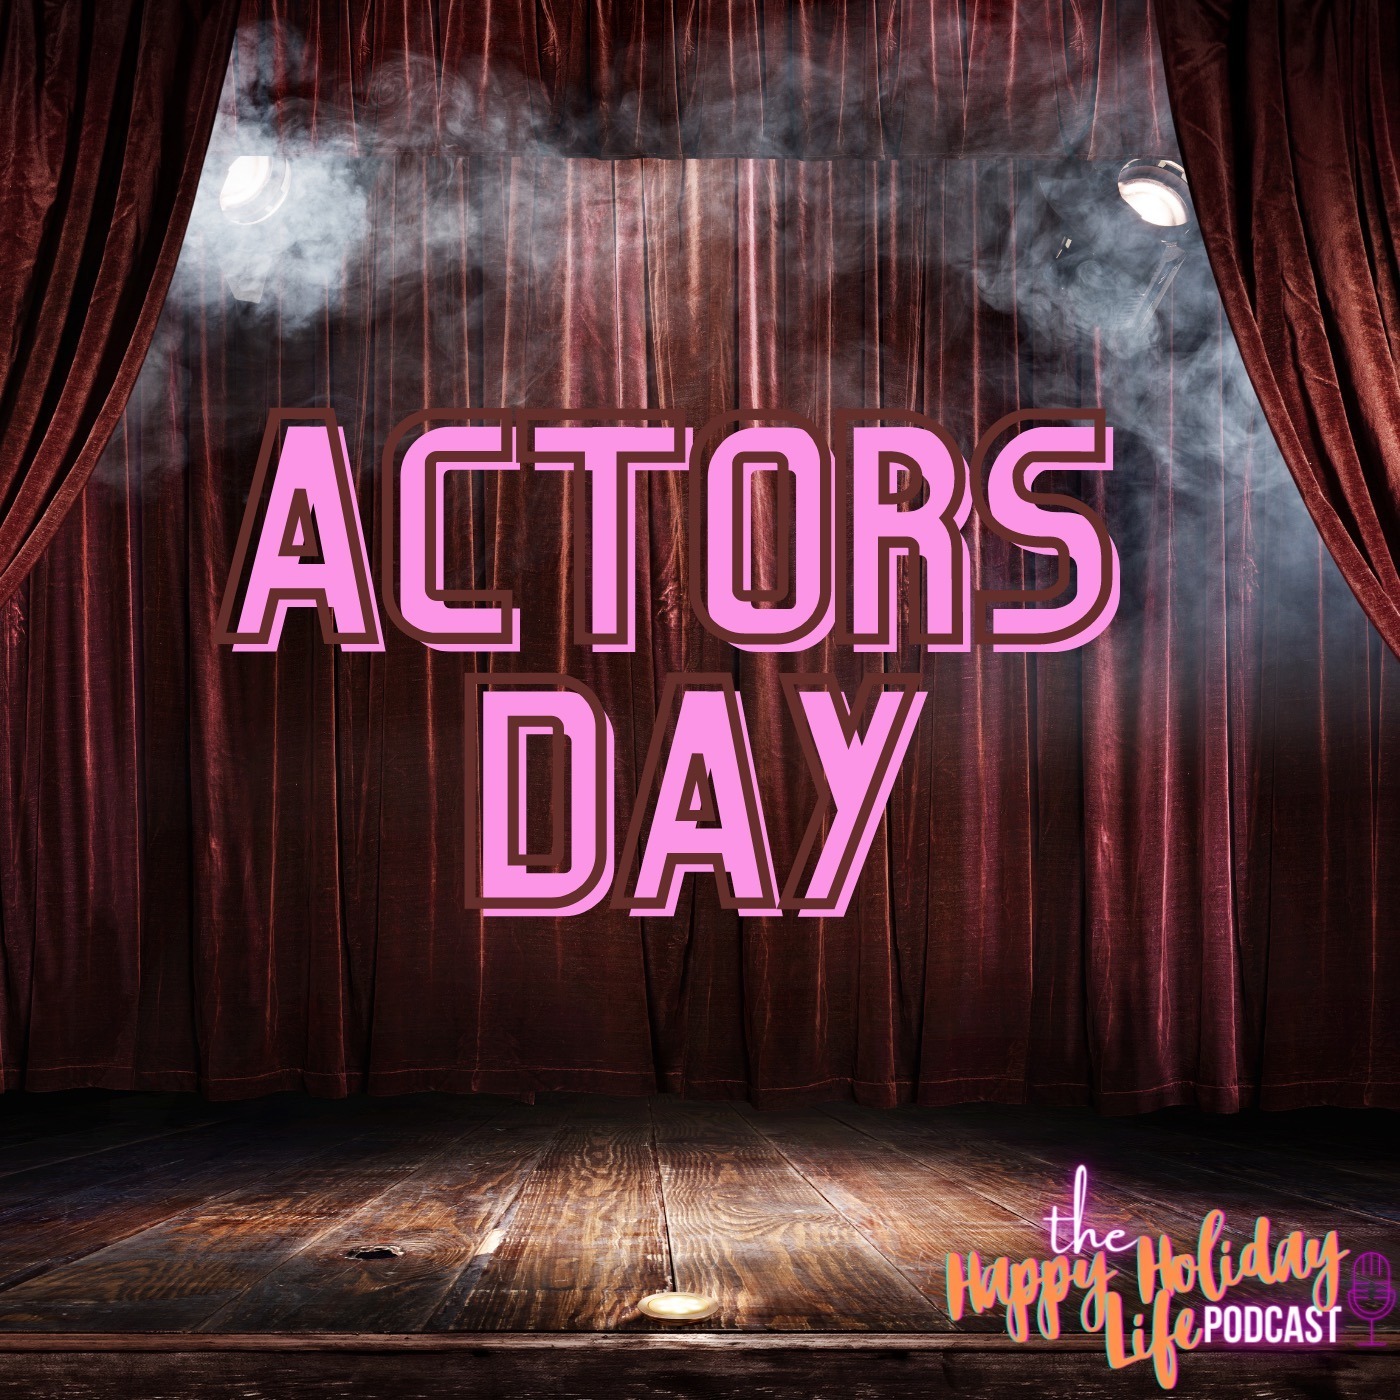 Episode #027 Actors Day